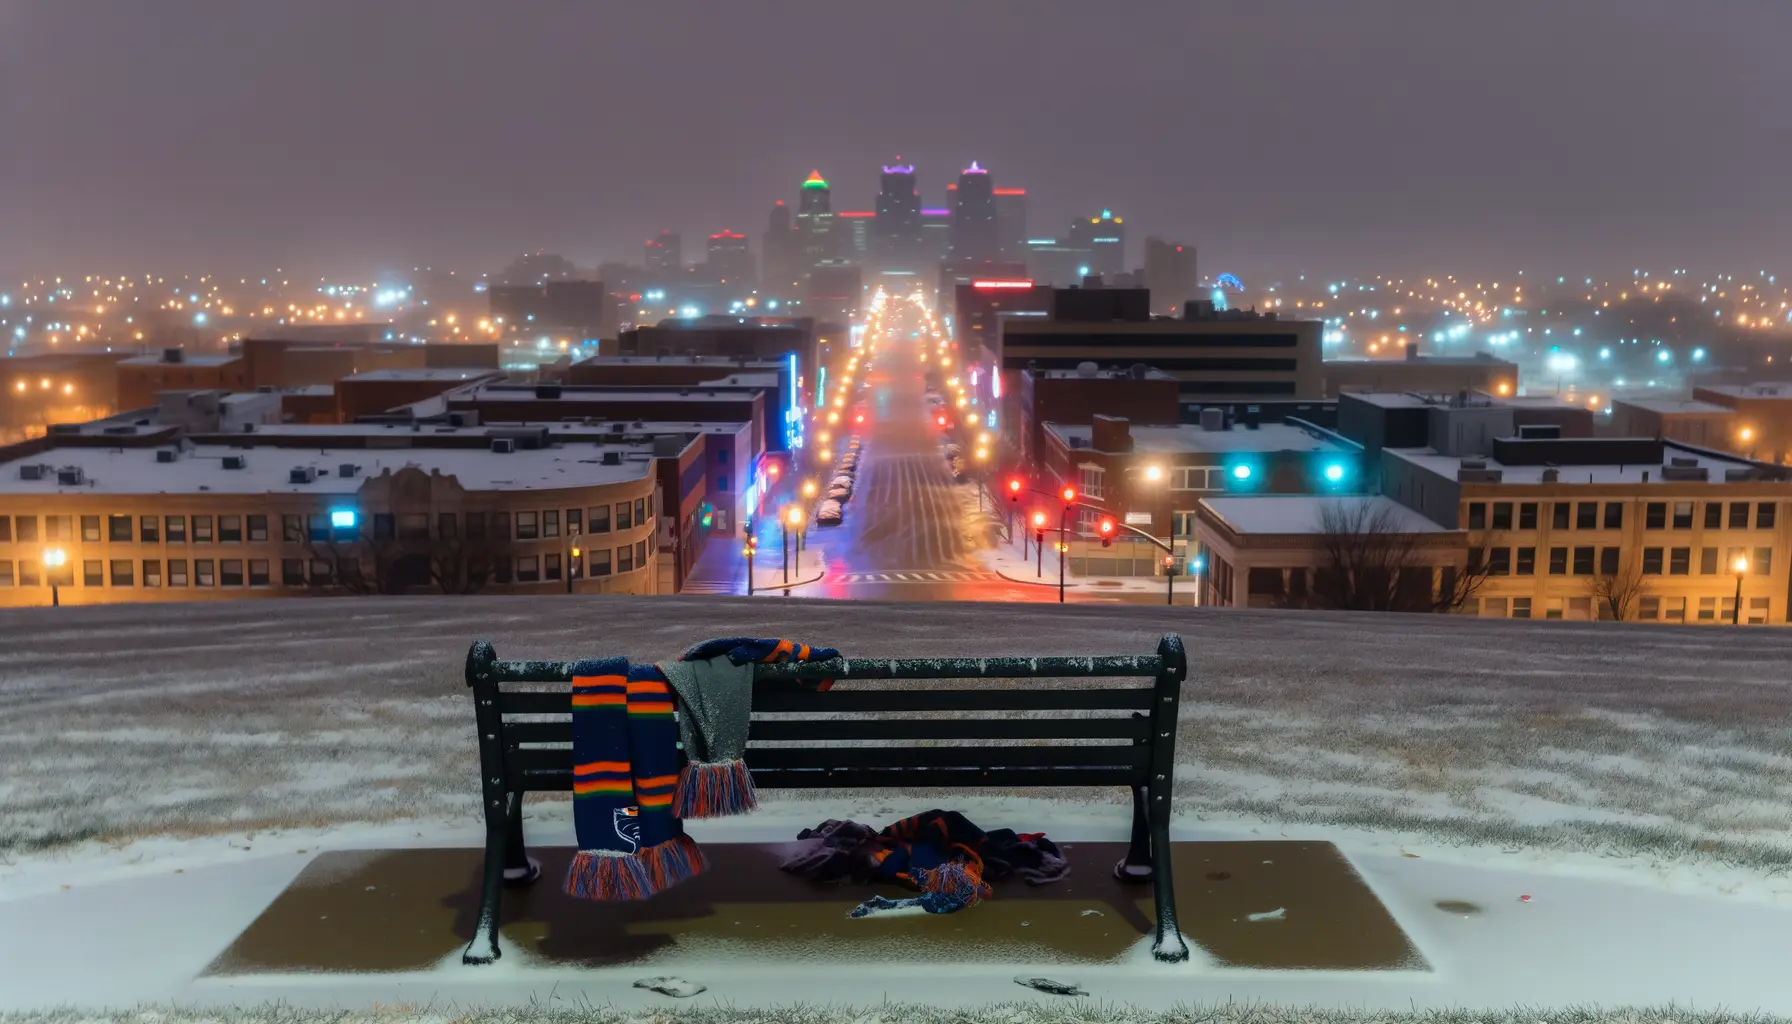 Atmosphärischer Blick auf eine im Winter ruhende Stadt